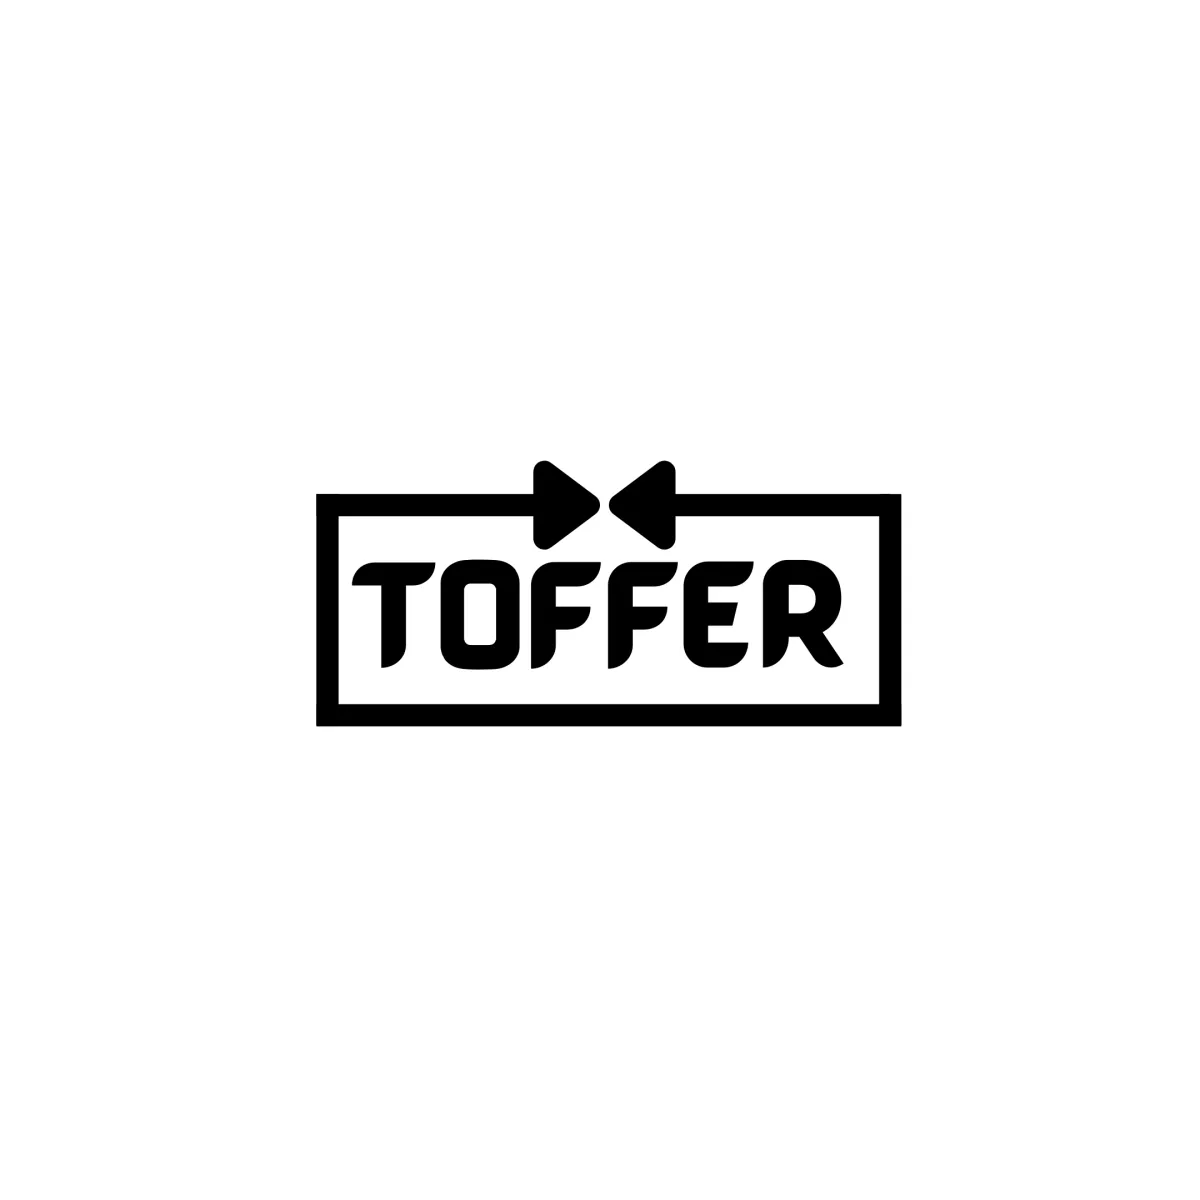 Toffer